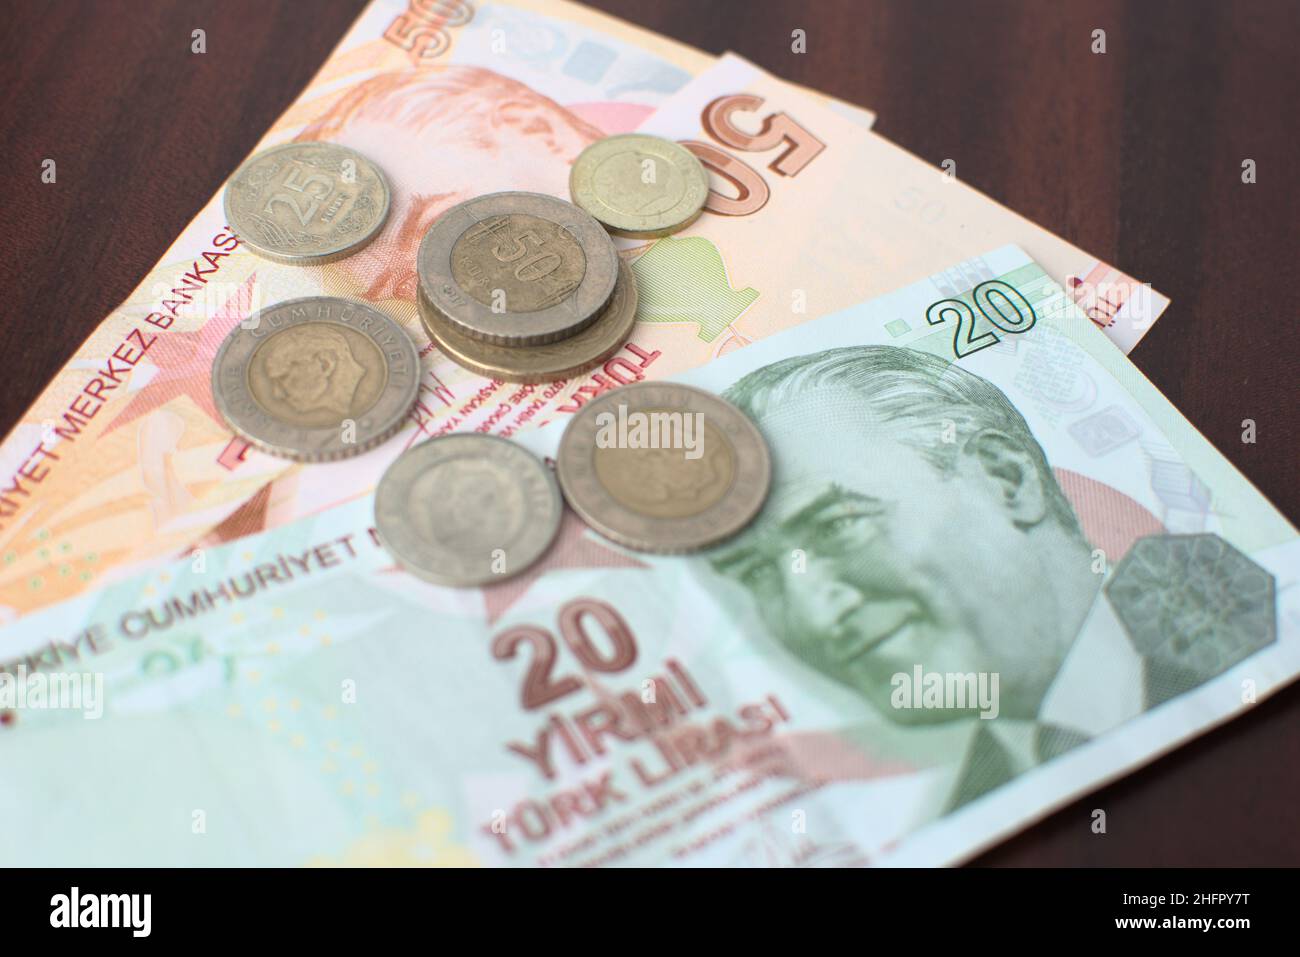 Einige türkische Banknoten und Münzen auf braunem Hintergrund. Einige türkische Liras für die Zahlung der Rechnungen auf einem braunen Tisch. Stockfoto